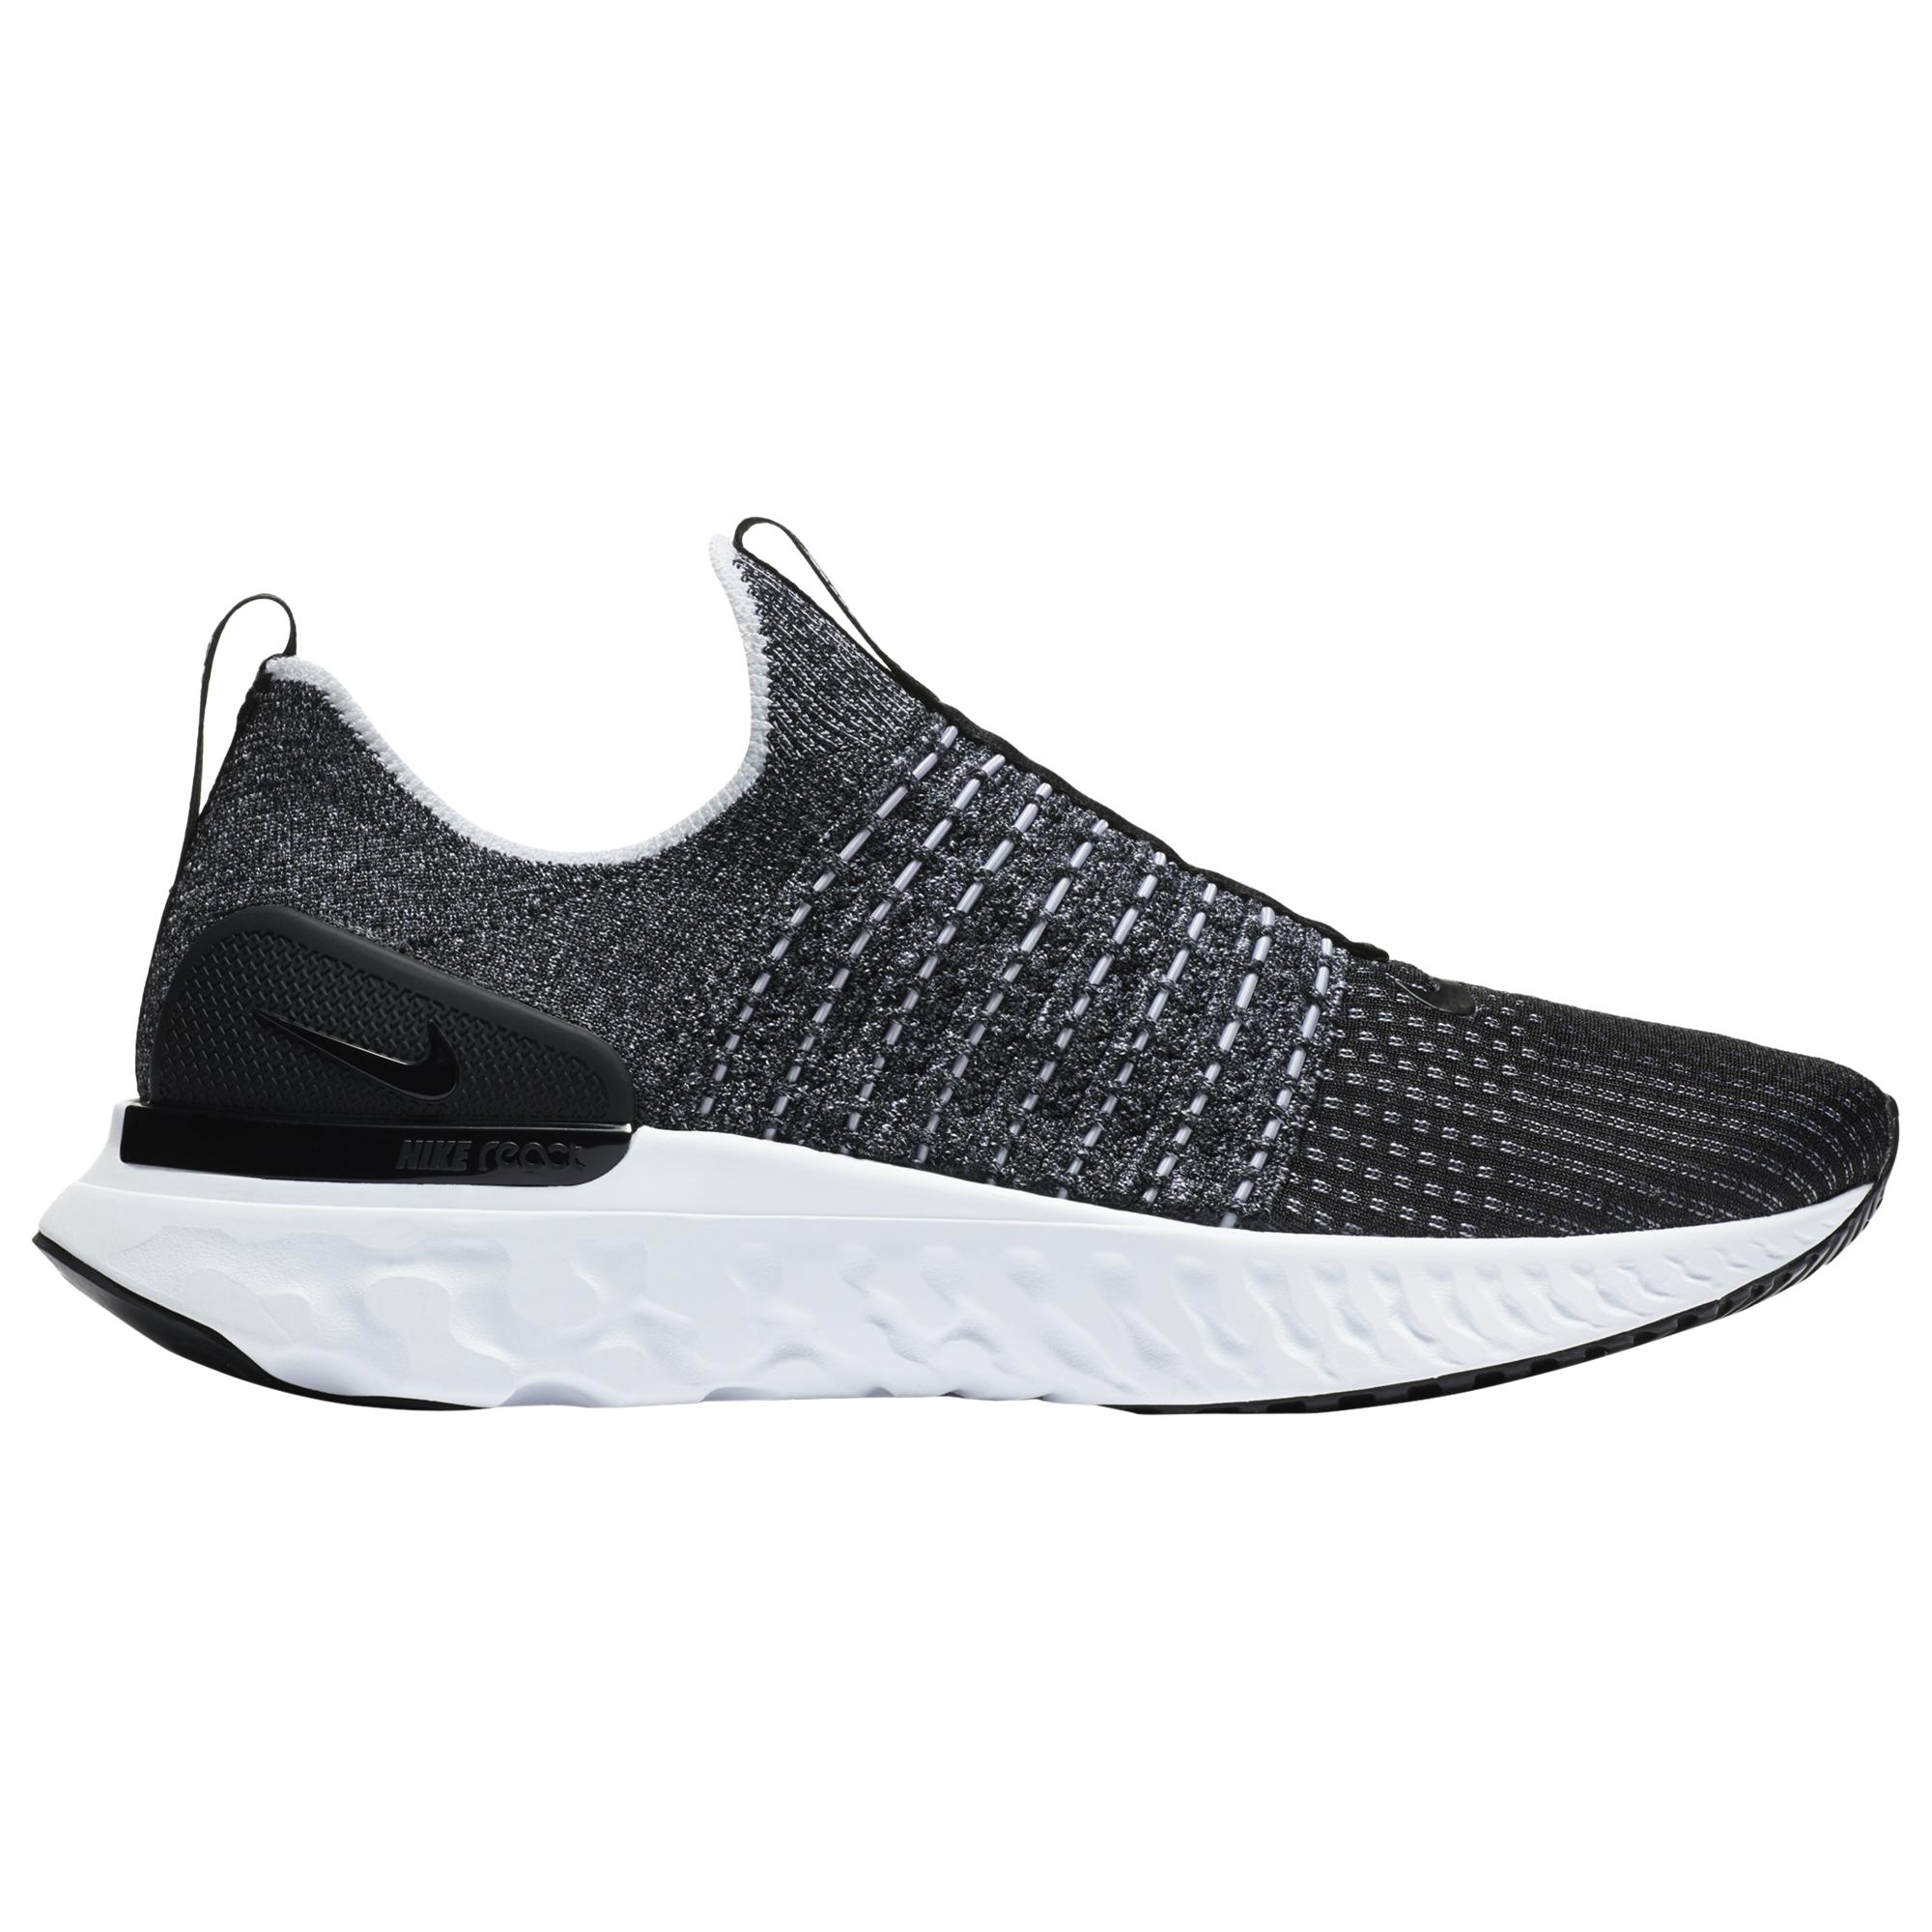 Nike Rubber React Phantom - Running Shoes in Black/White (Black) for ...